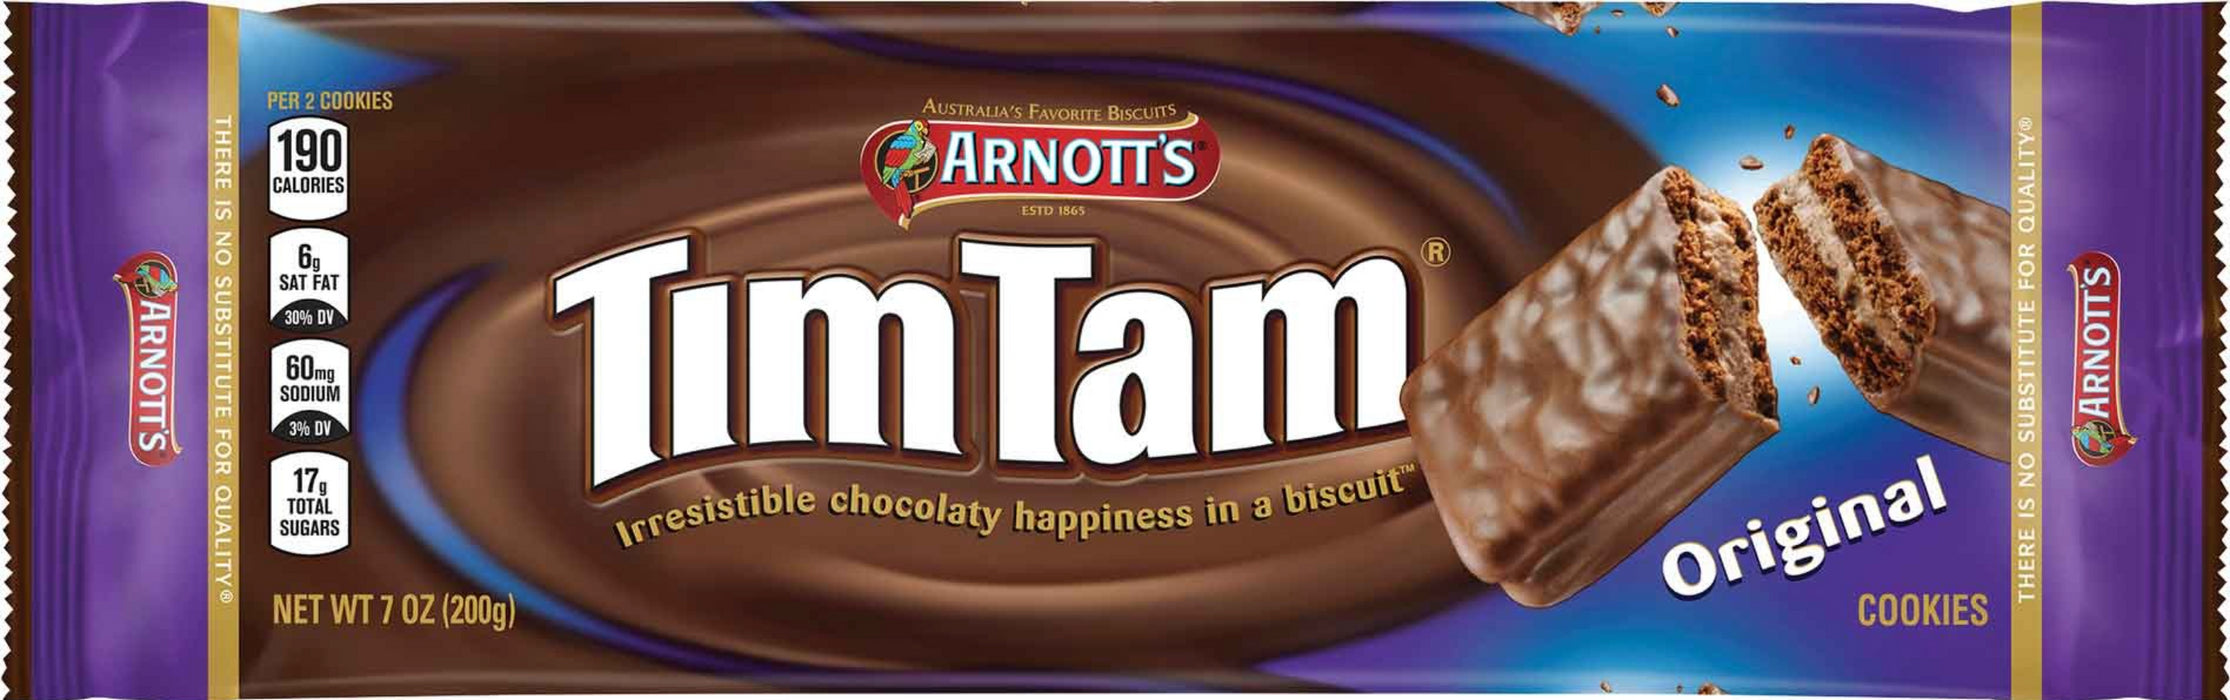 Arnotts Tim Tam Cookies